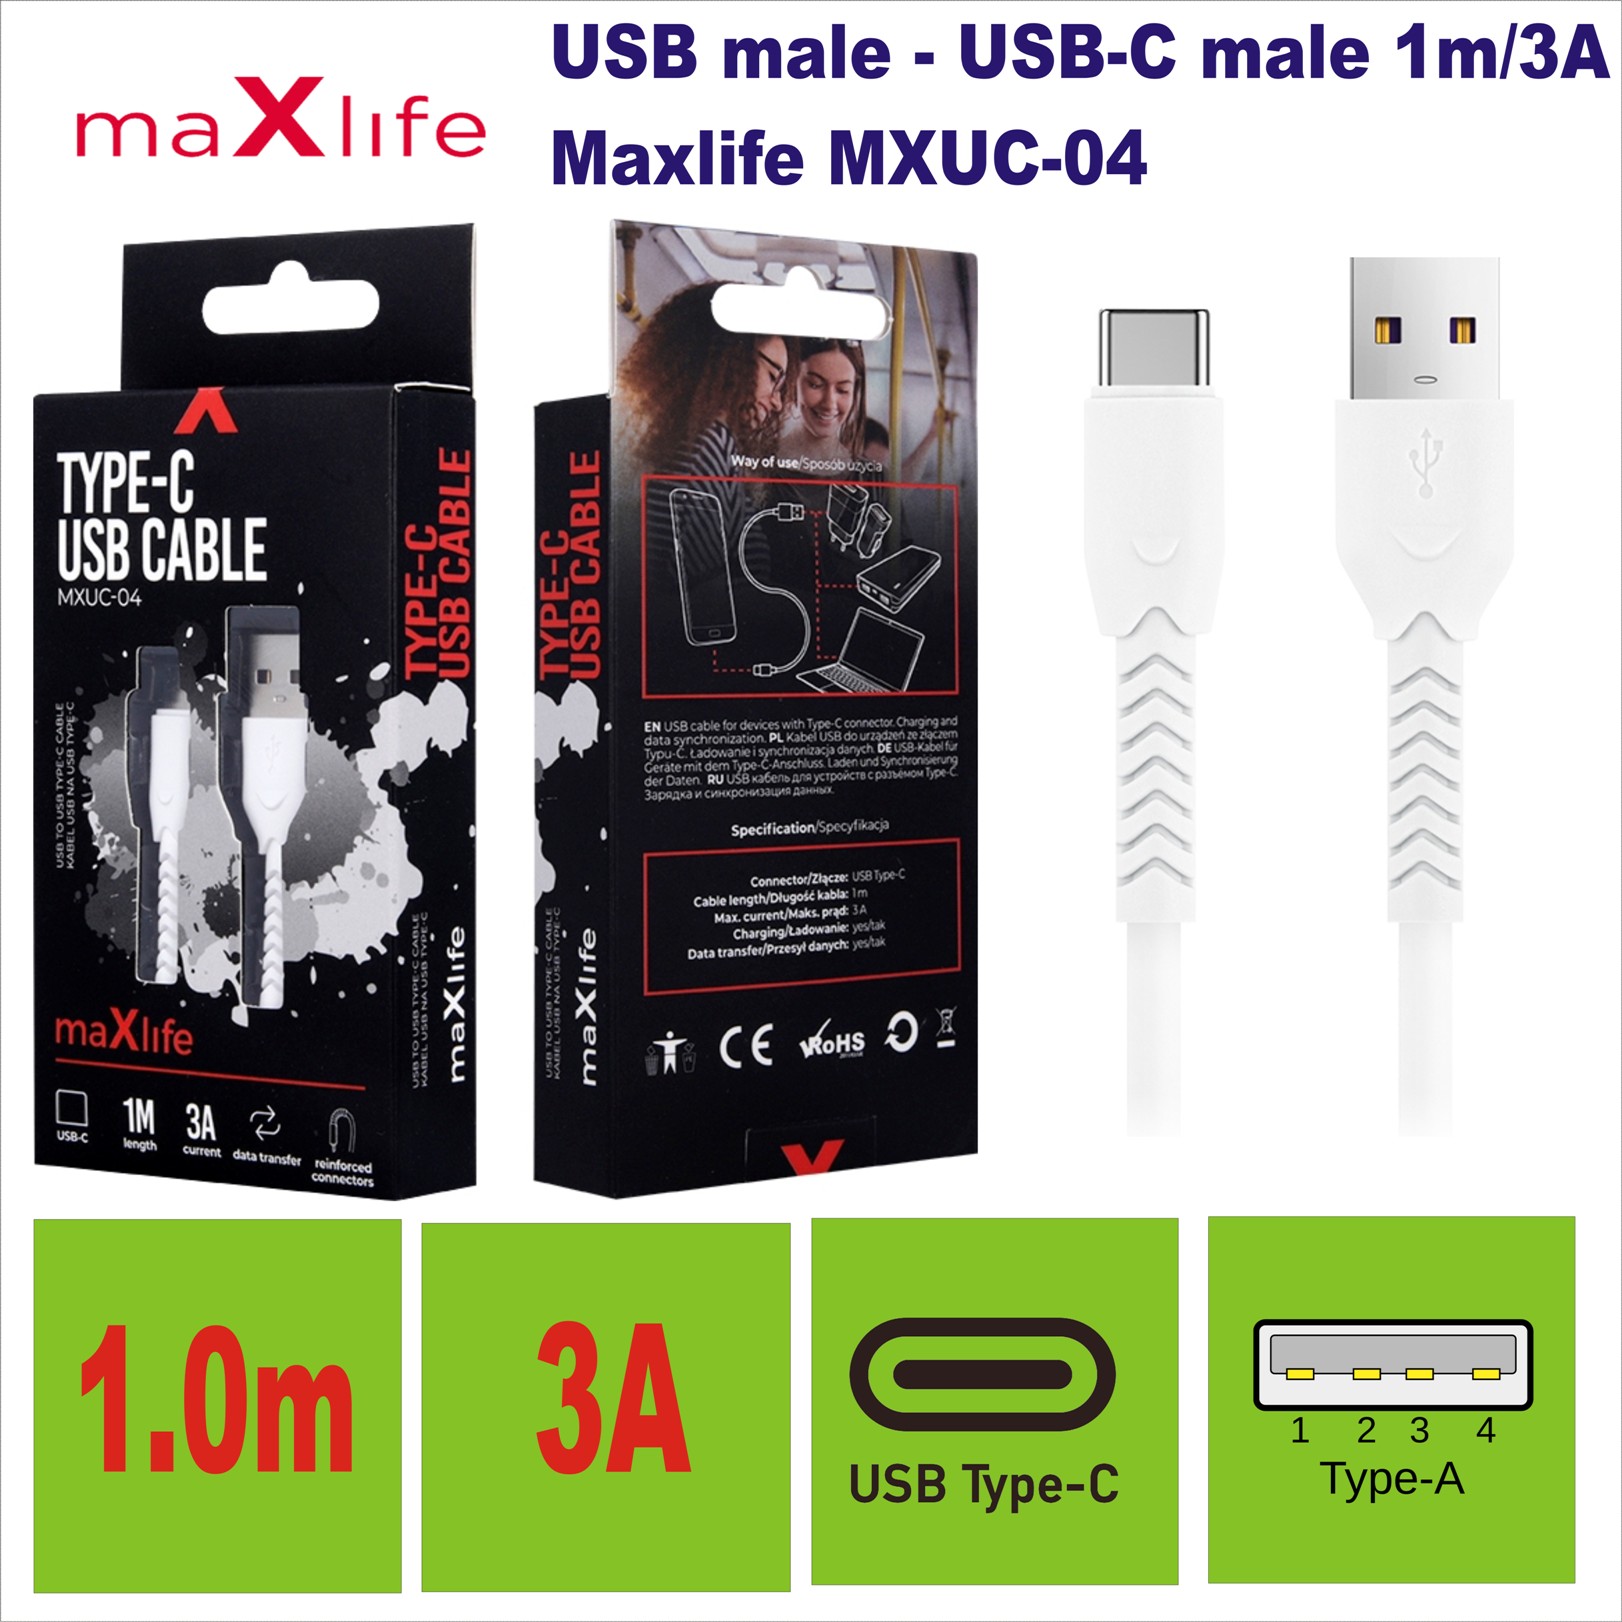 USB male - USB-C male 1m/3A Maxlife MXUC-04